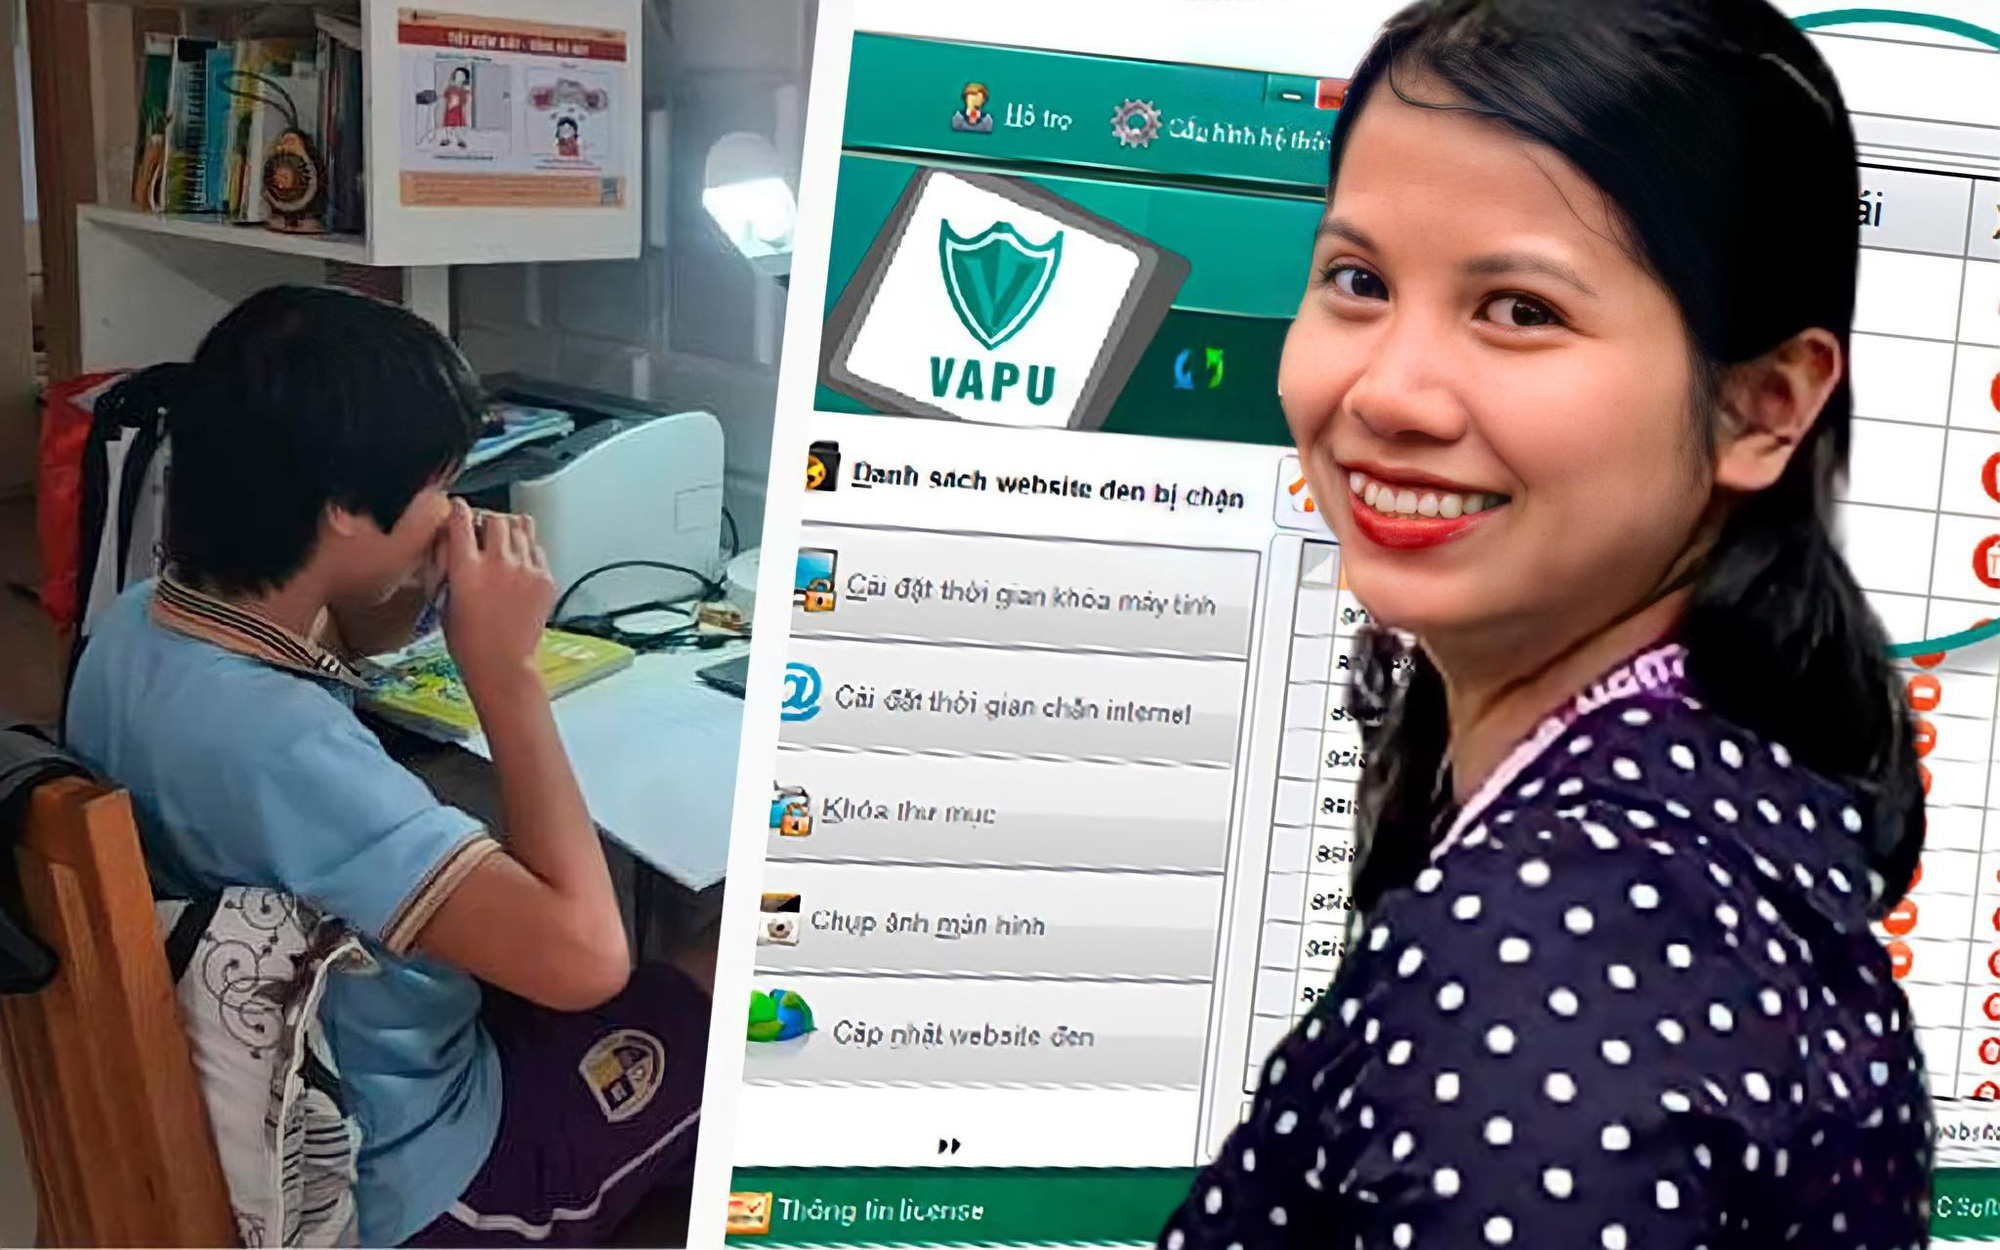 Loạt bí kíp "nhỏ mà có võ" của bà mẹ ở Hà Nội giúp con học online hiệu quả, đặc biệt là chiếc app hay ho chặn hết "web đen", game bẩn 